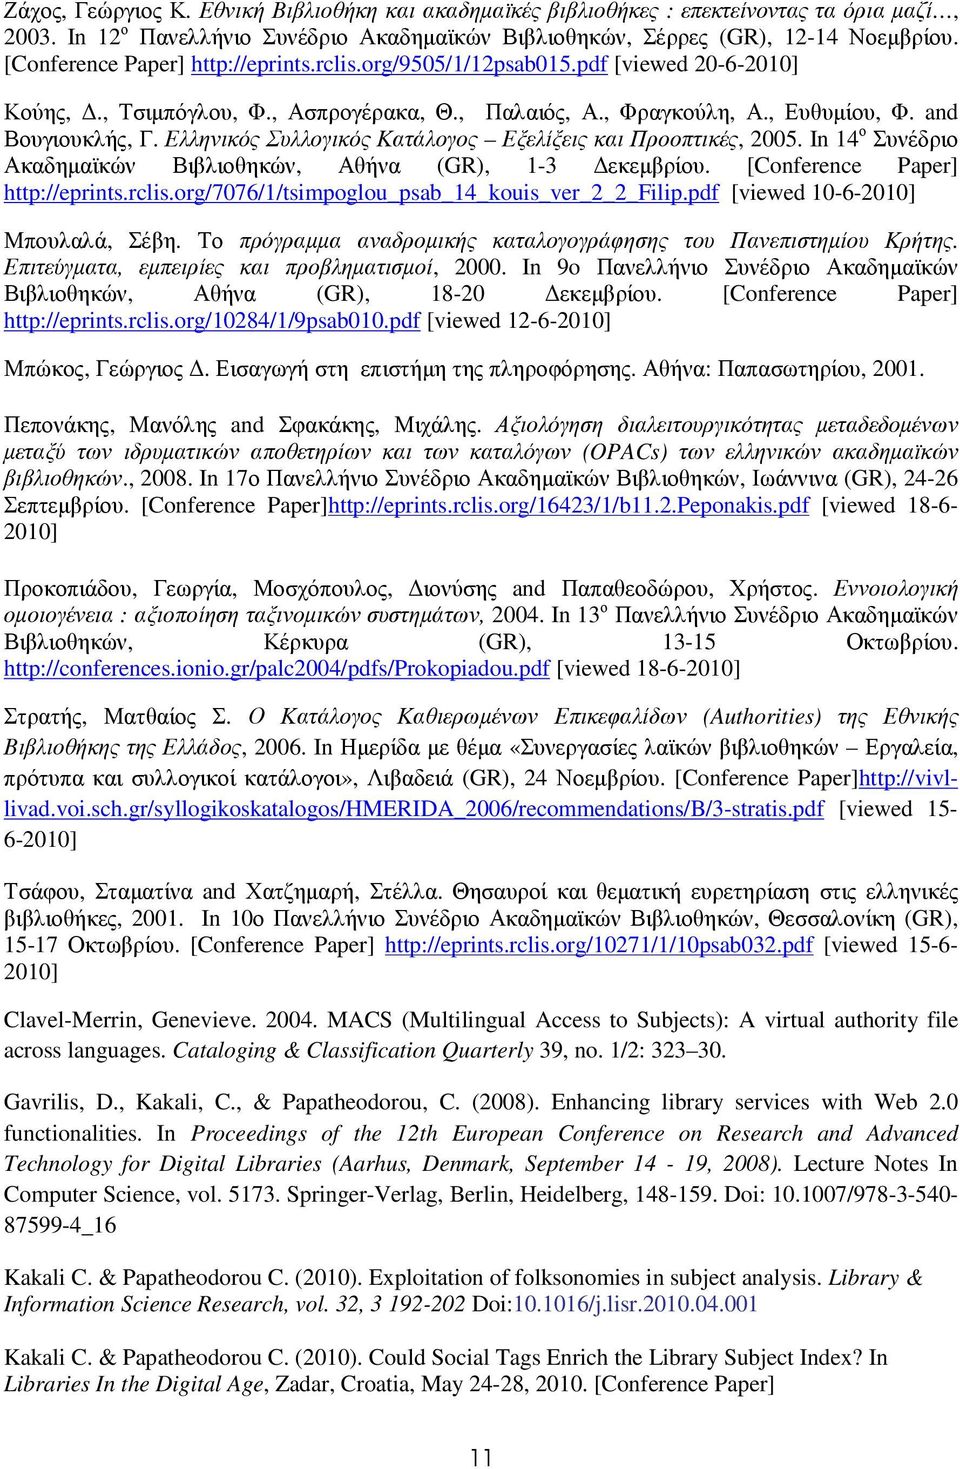 Ελληνικός Συλλογικός Κατάλογος Εξελίξεις και Προοπτικές, 2005. In 14 ο Συνέδριο Ακαδηµαϊκών Βιβλιοθηκών, Αθήνα (GR), 1-3 εκεµβρίου. [Conference Paper] http://eprints.rclis.